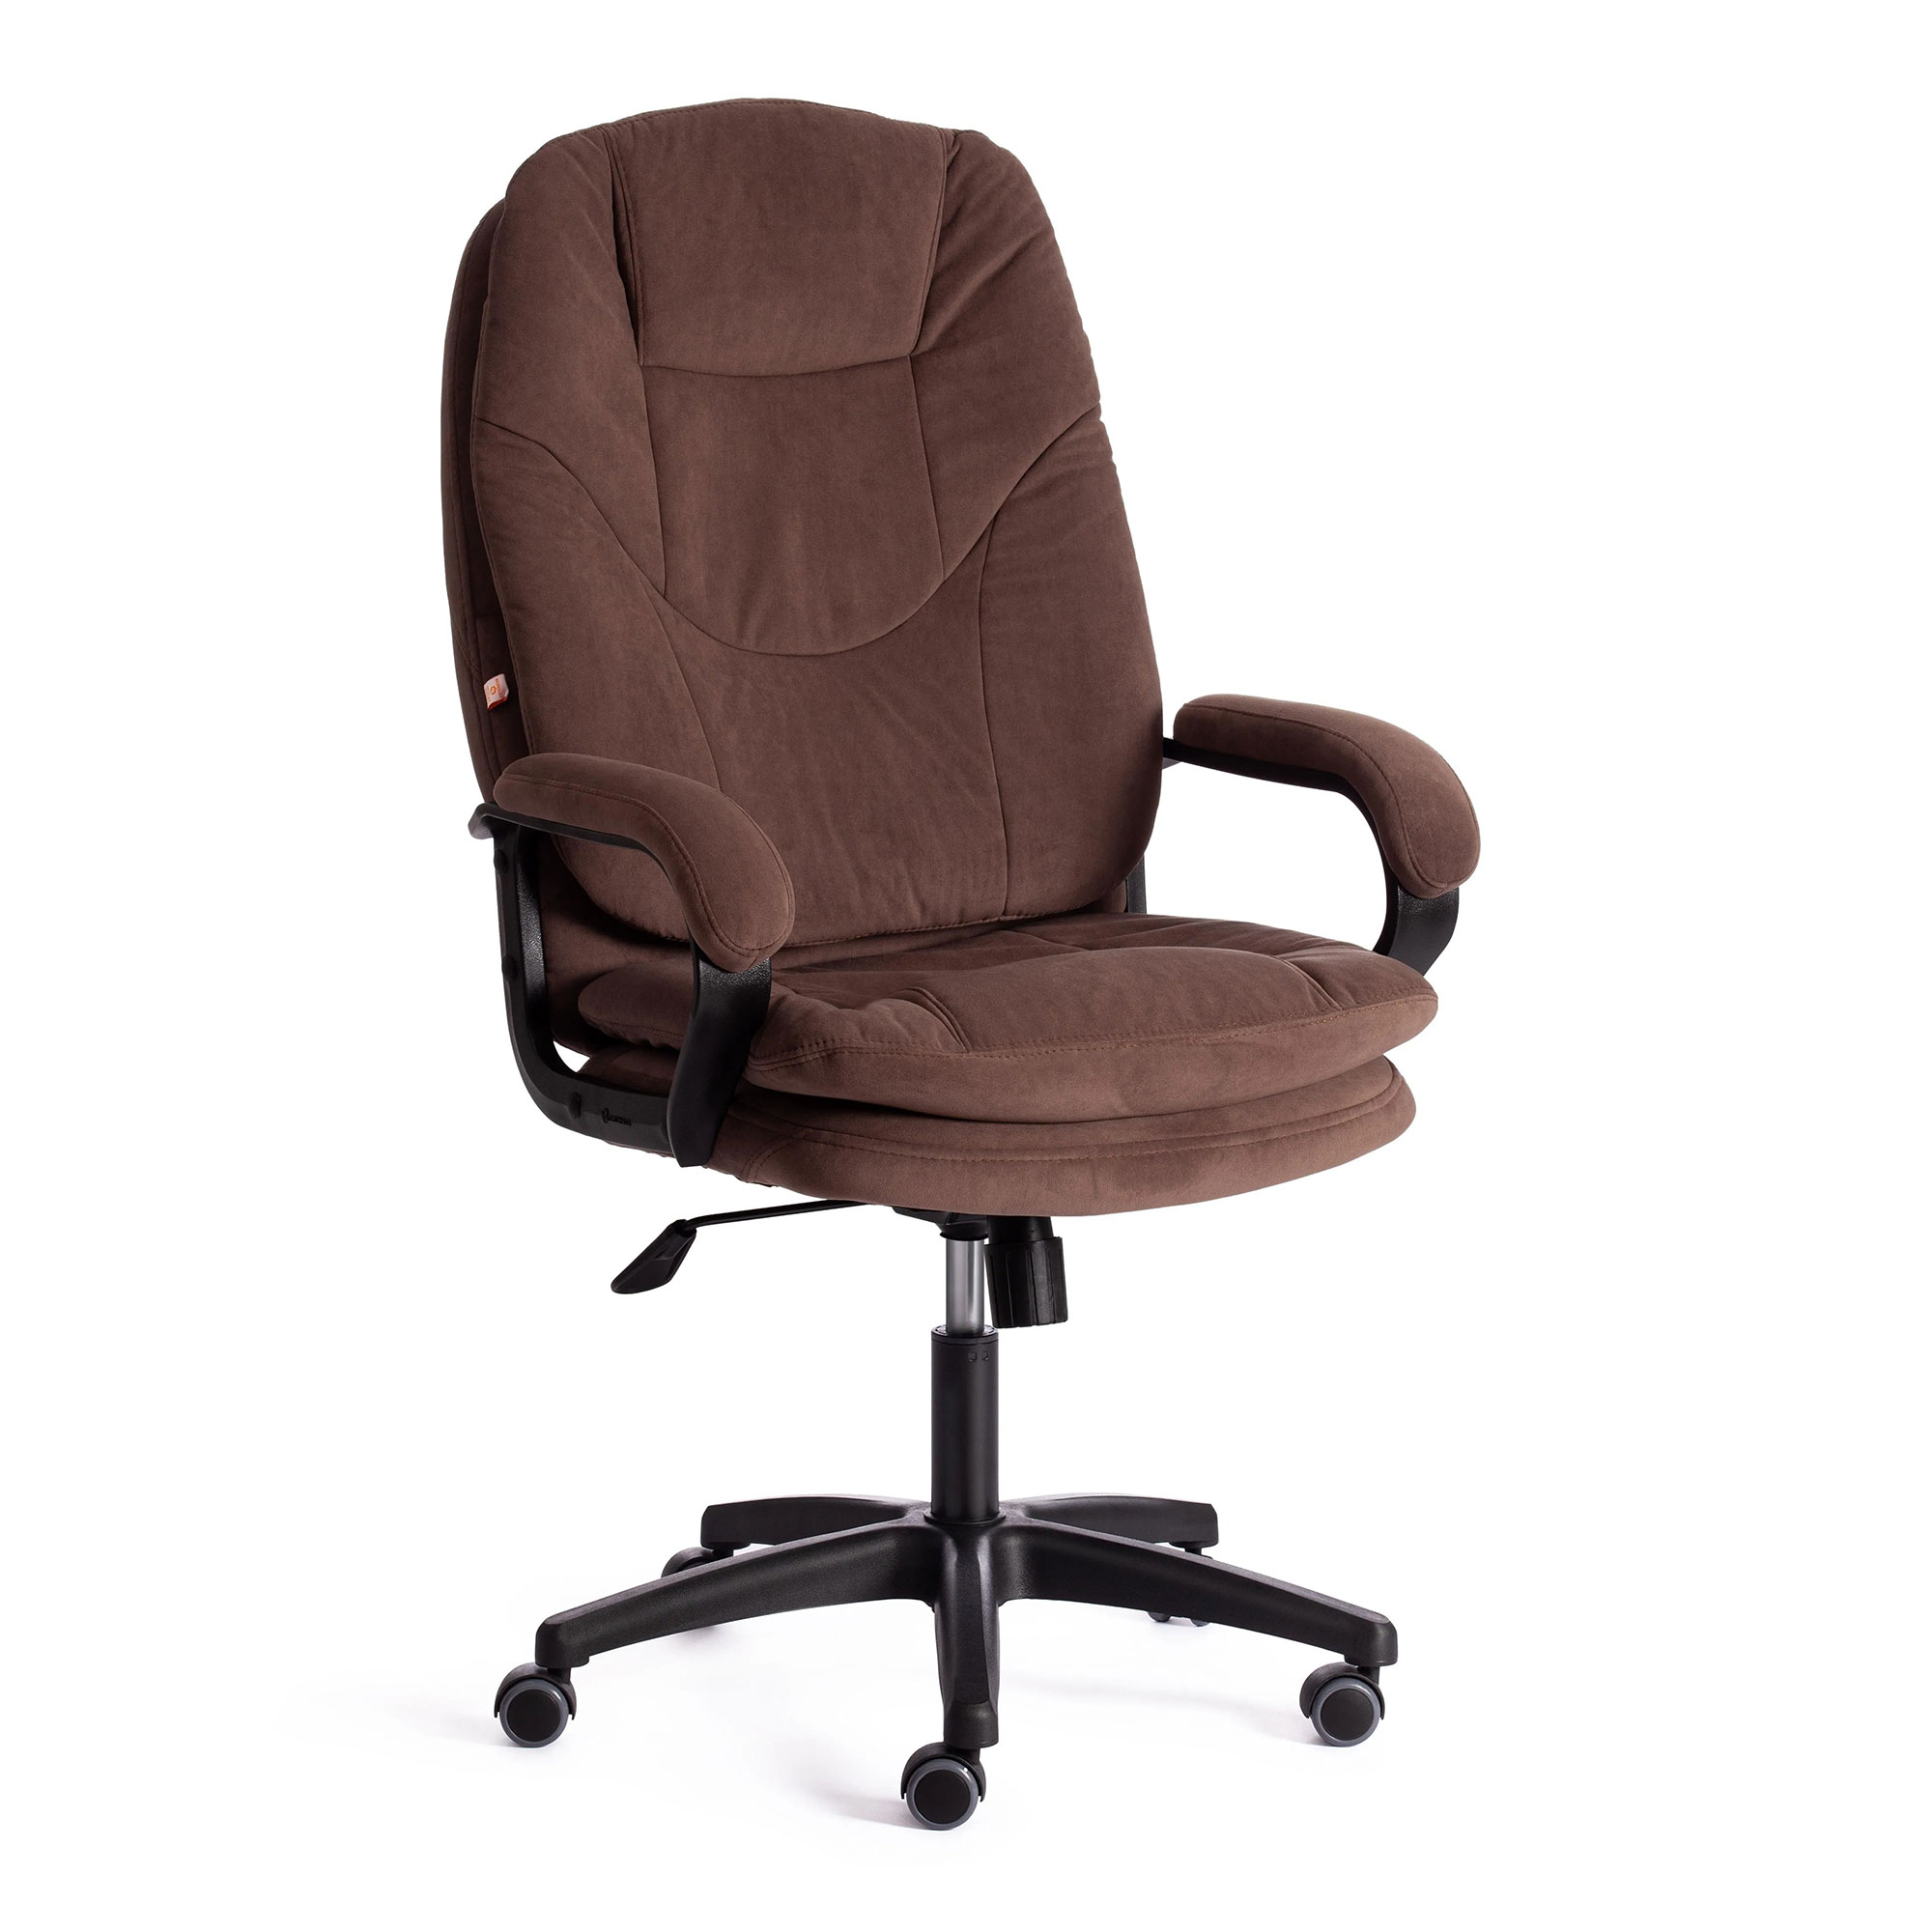 Компьютерное кресло TC Comfort коричневое 66х46х133 см (19384)